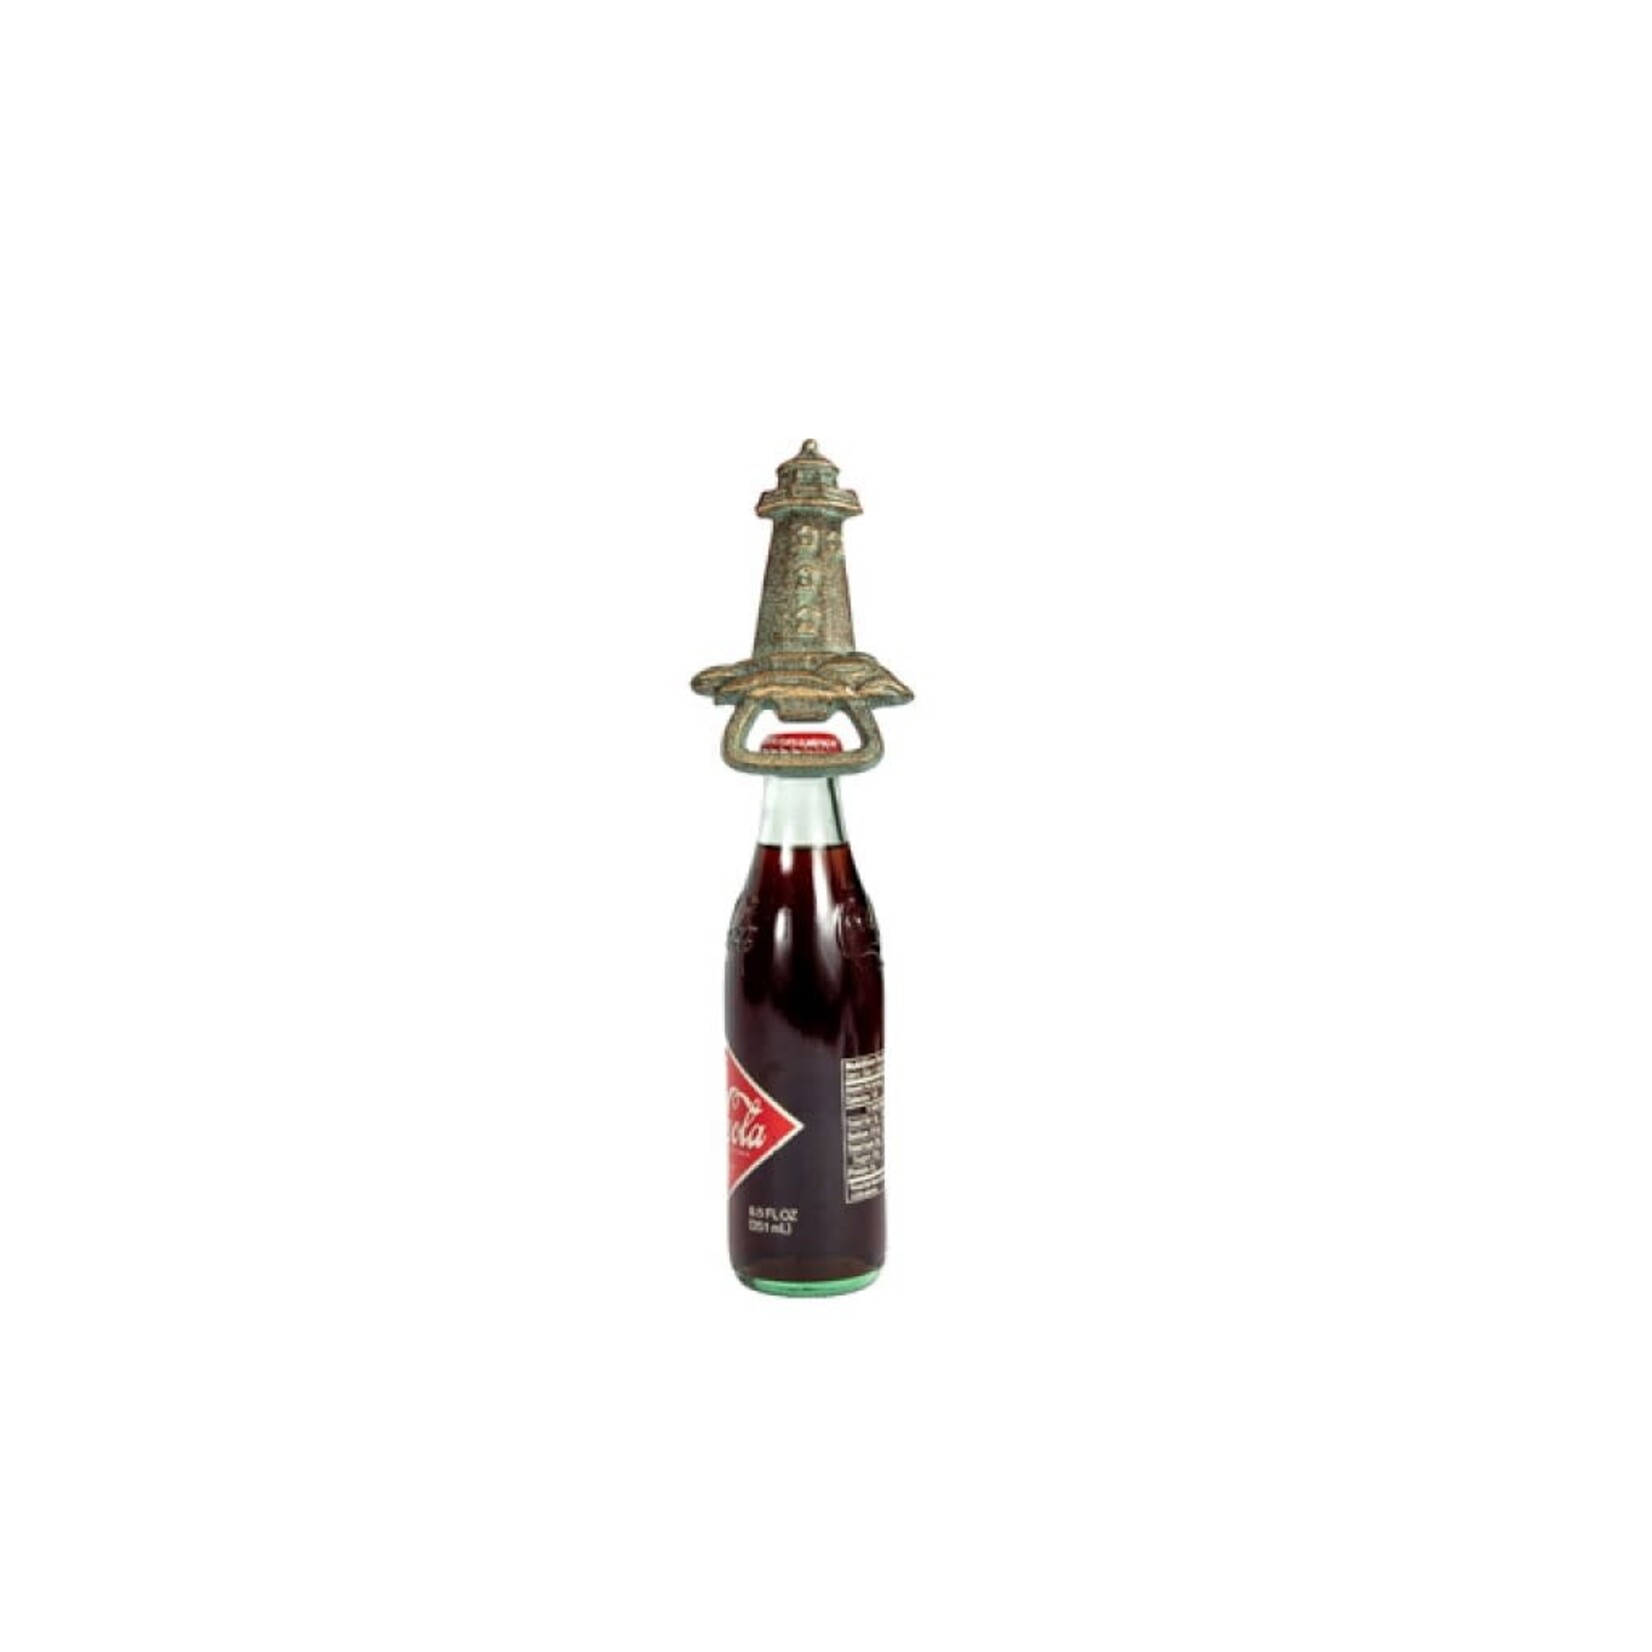 Bottle Opener - Lighthouse Patina